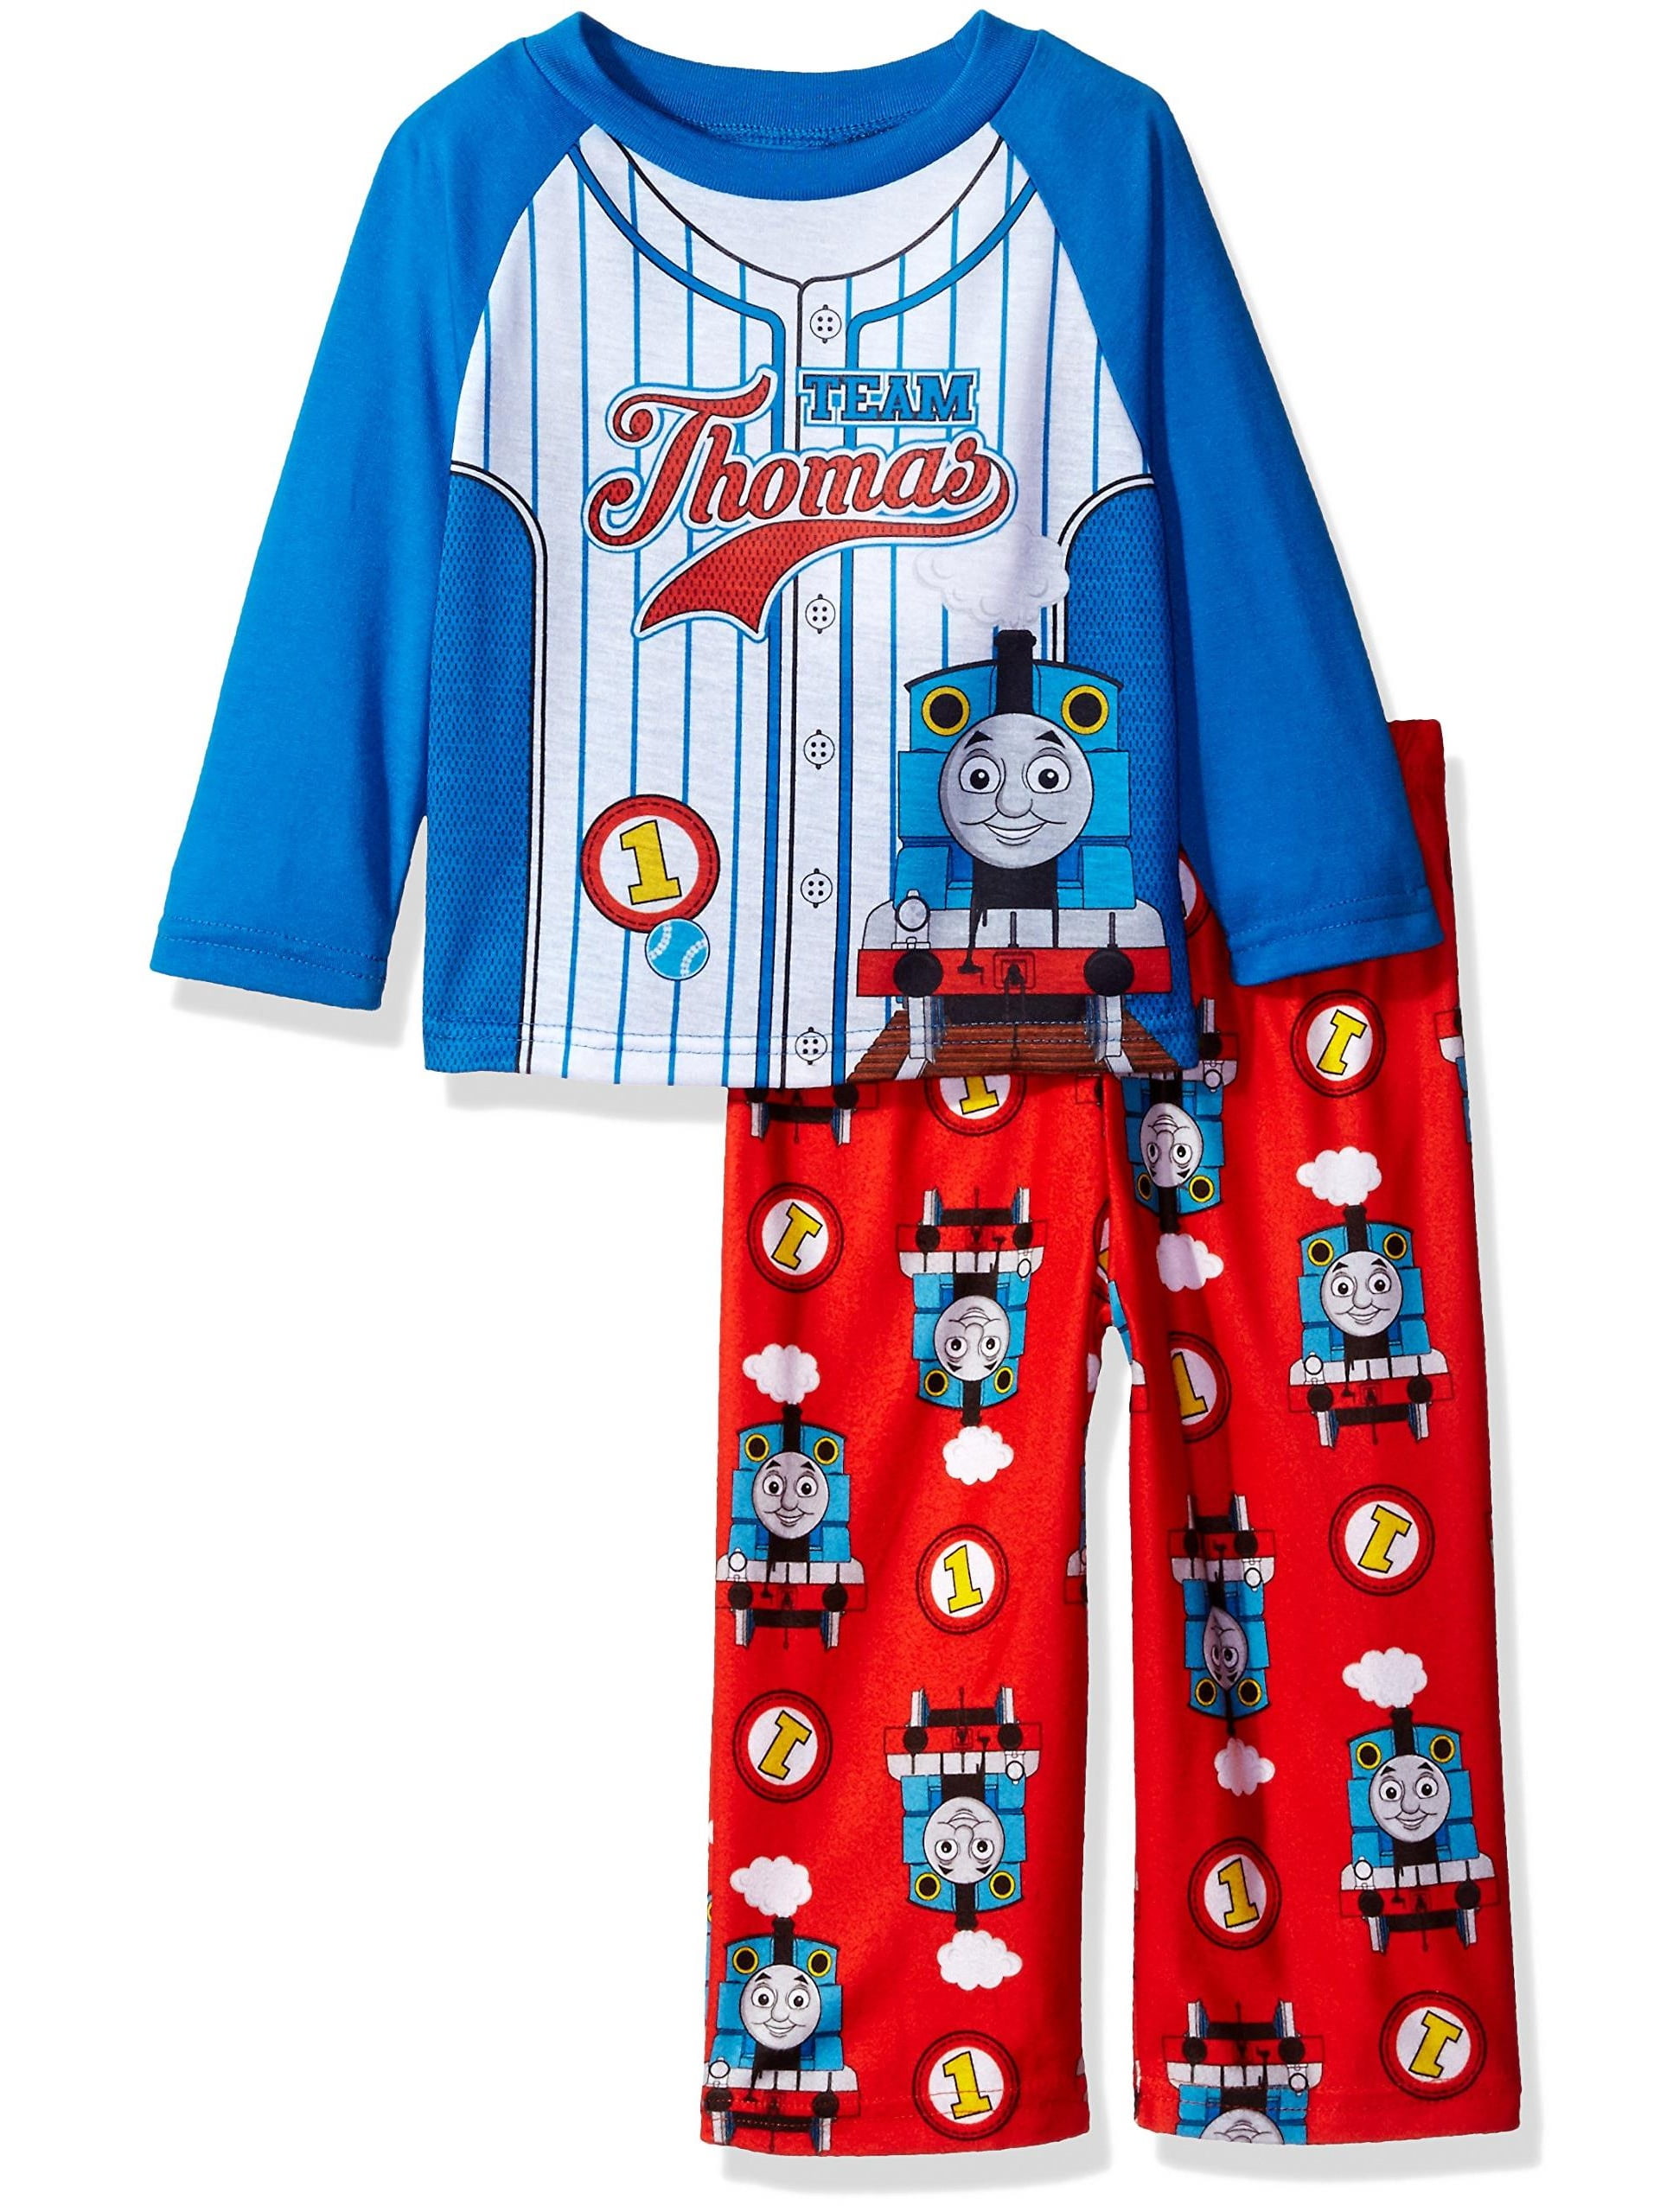 Thomas the Train Boys Pajamas NEW 